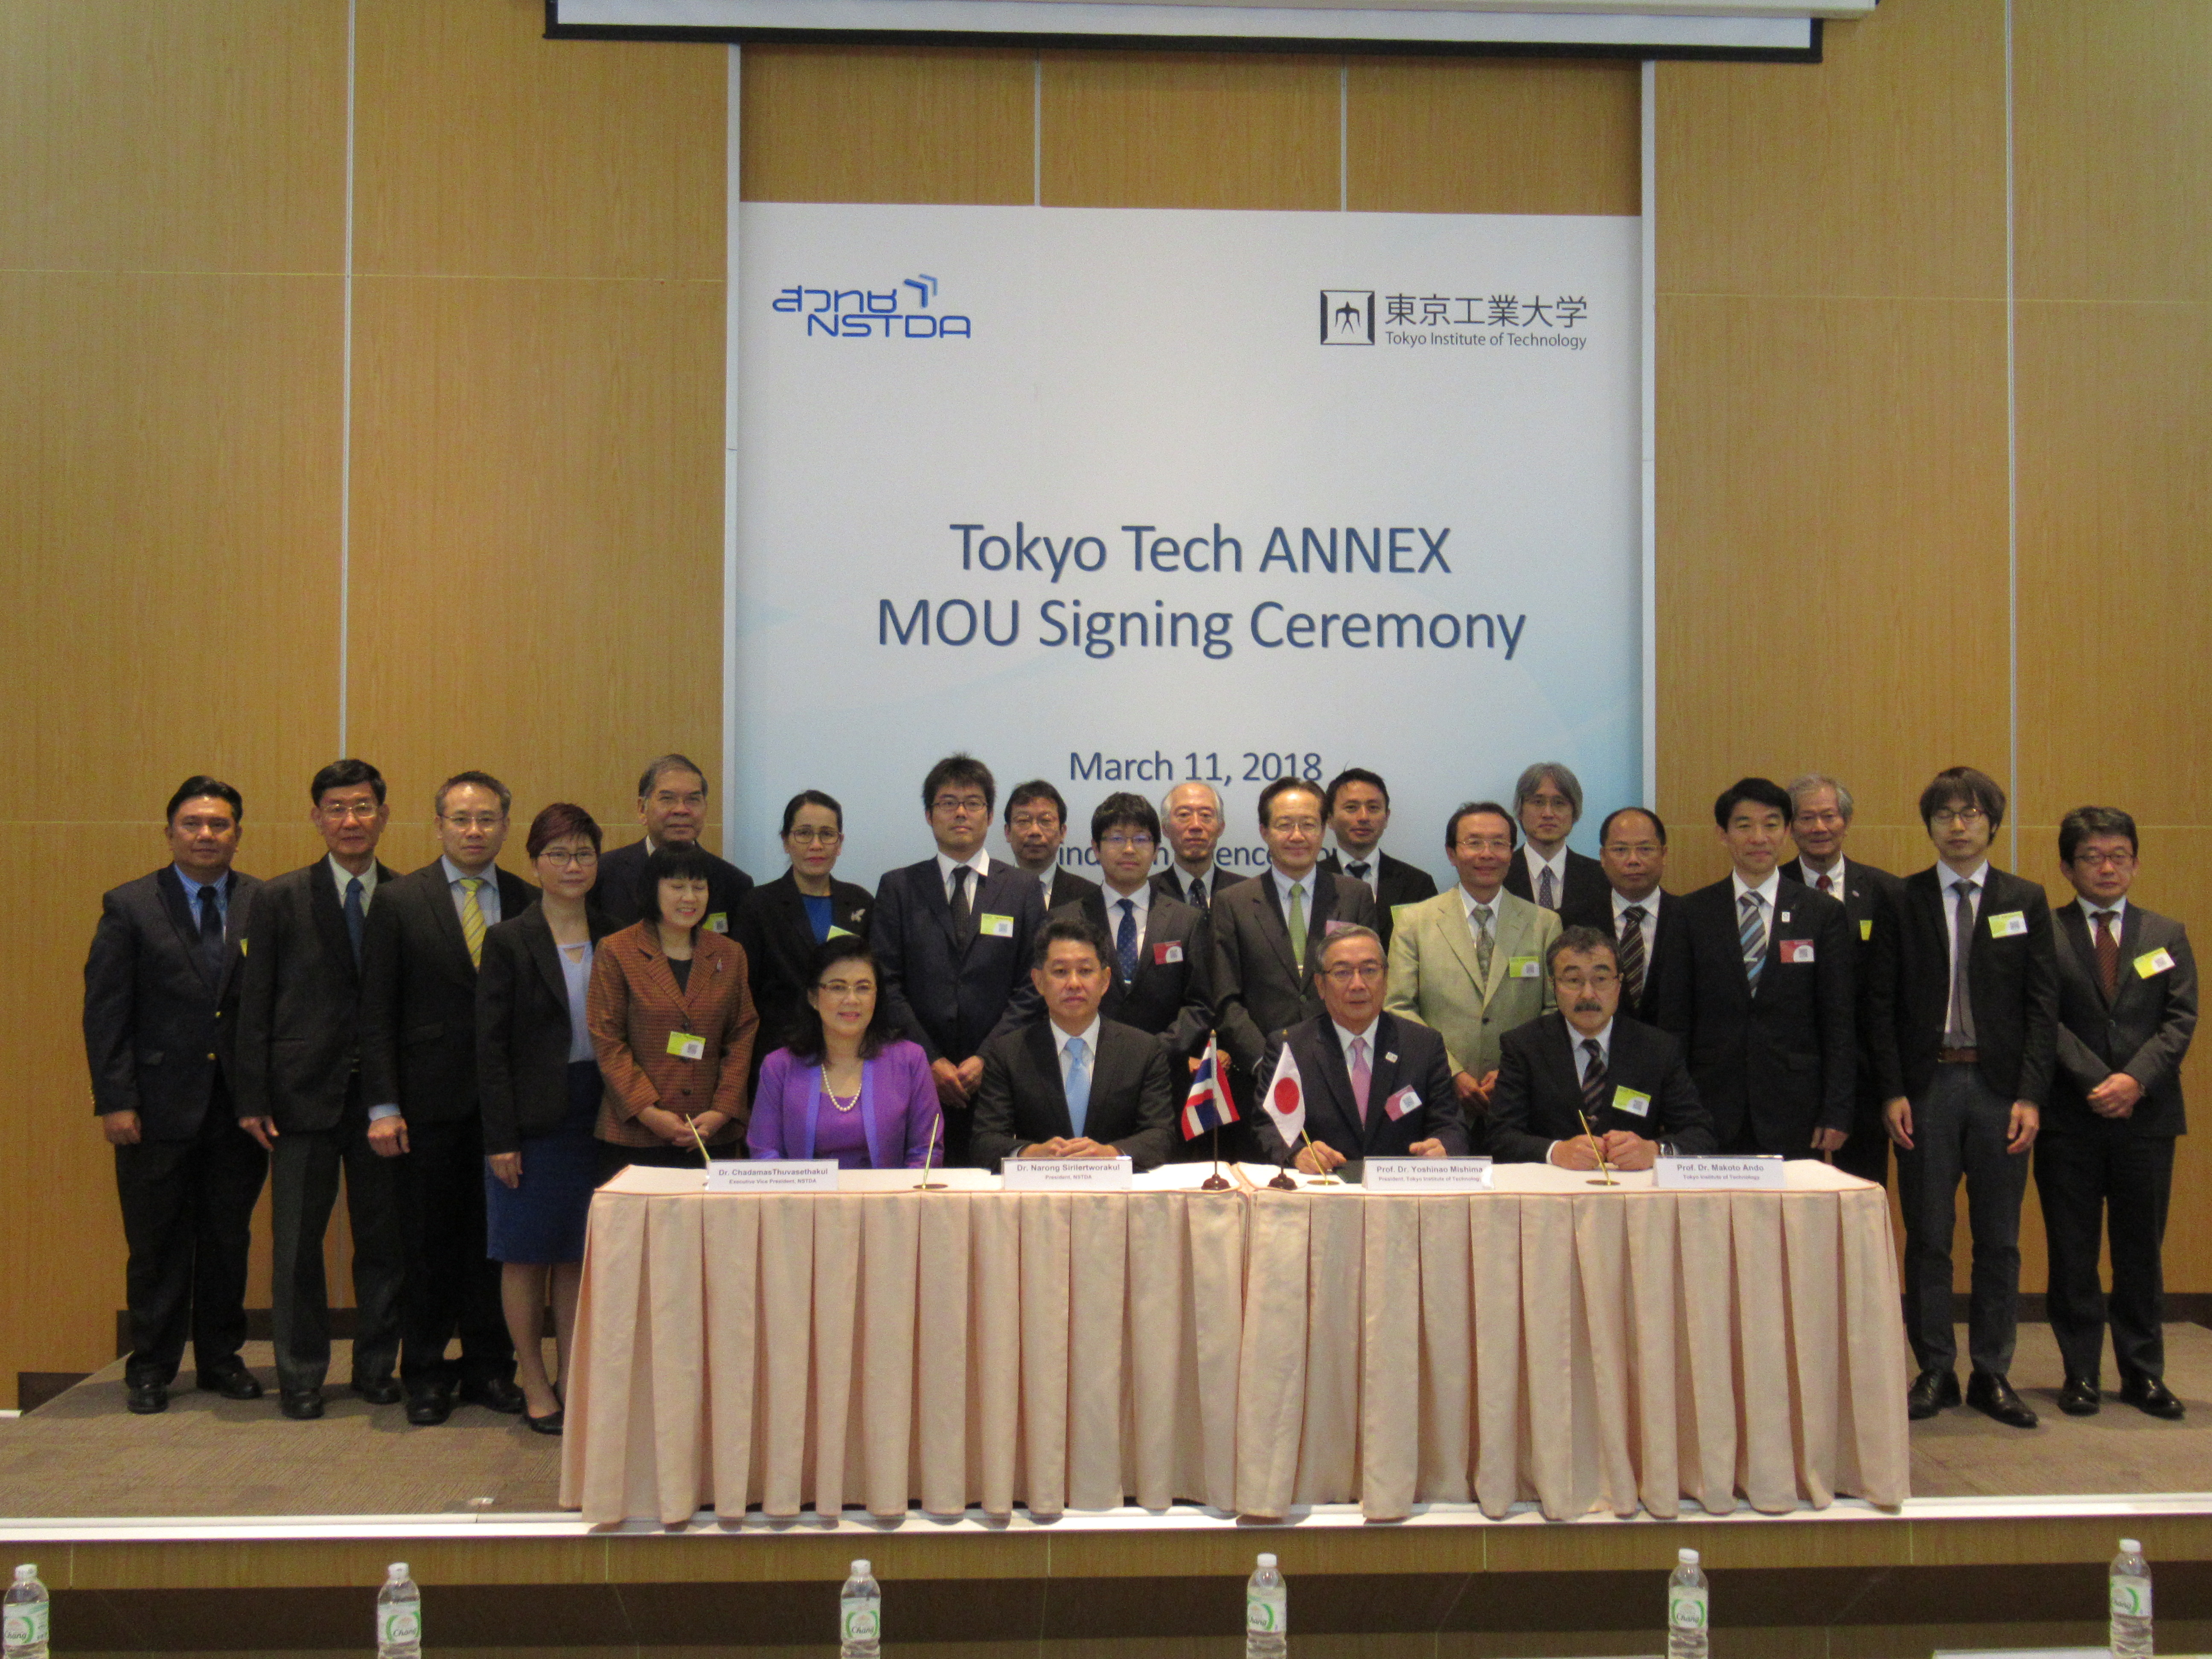 Tokyo Tech ANNEX Bangkok MOU 調印式典の開催支援